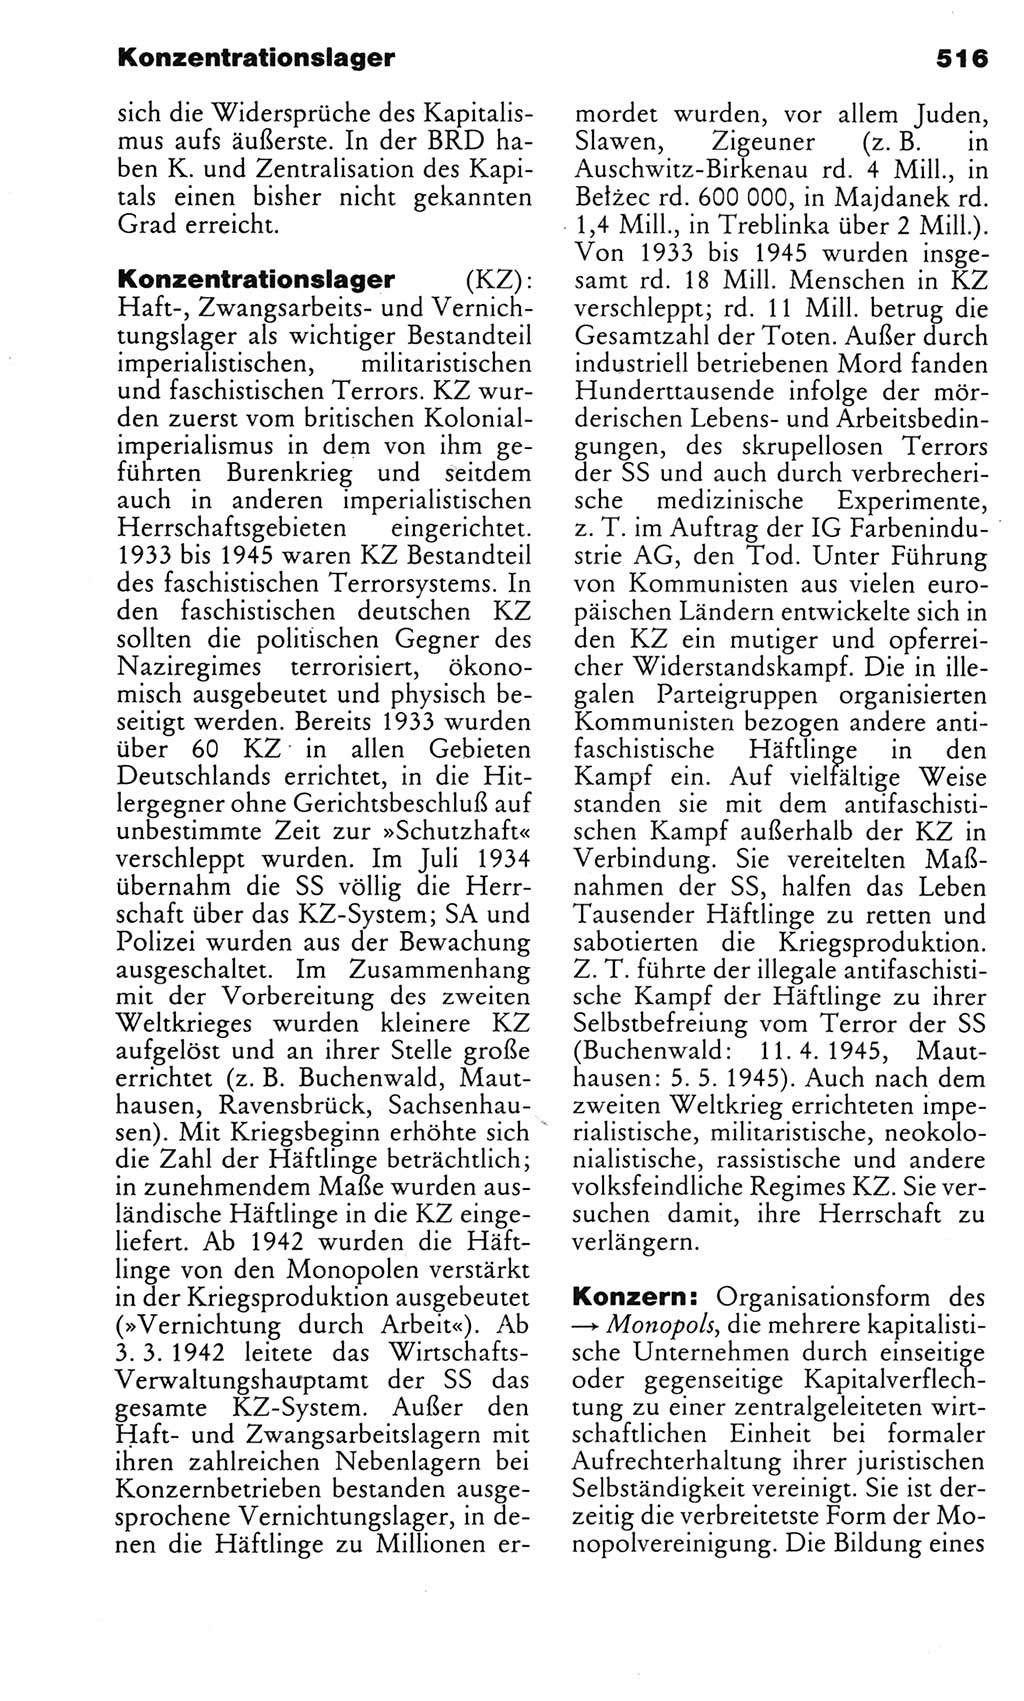 Kleines politisches Wörterbuch [Deutsche Demokratische Republik (DDR)] 1983, Seite 516 (Kl. pol. Wb. DDR 1983, S. 516)